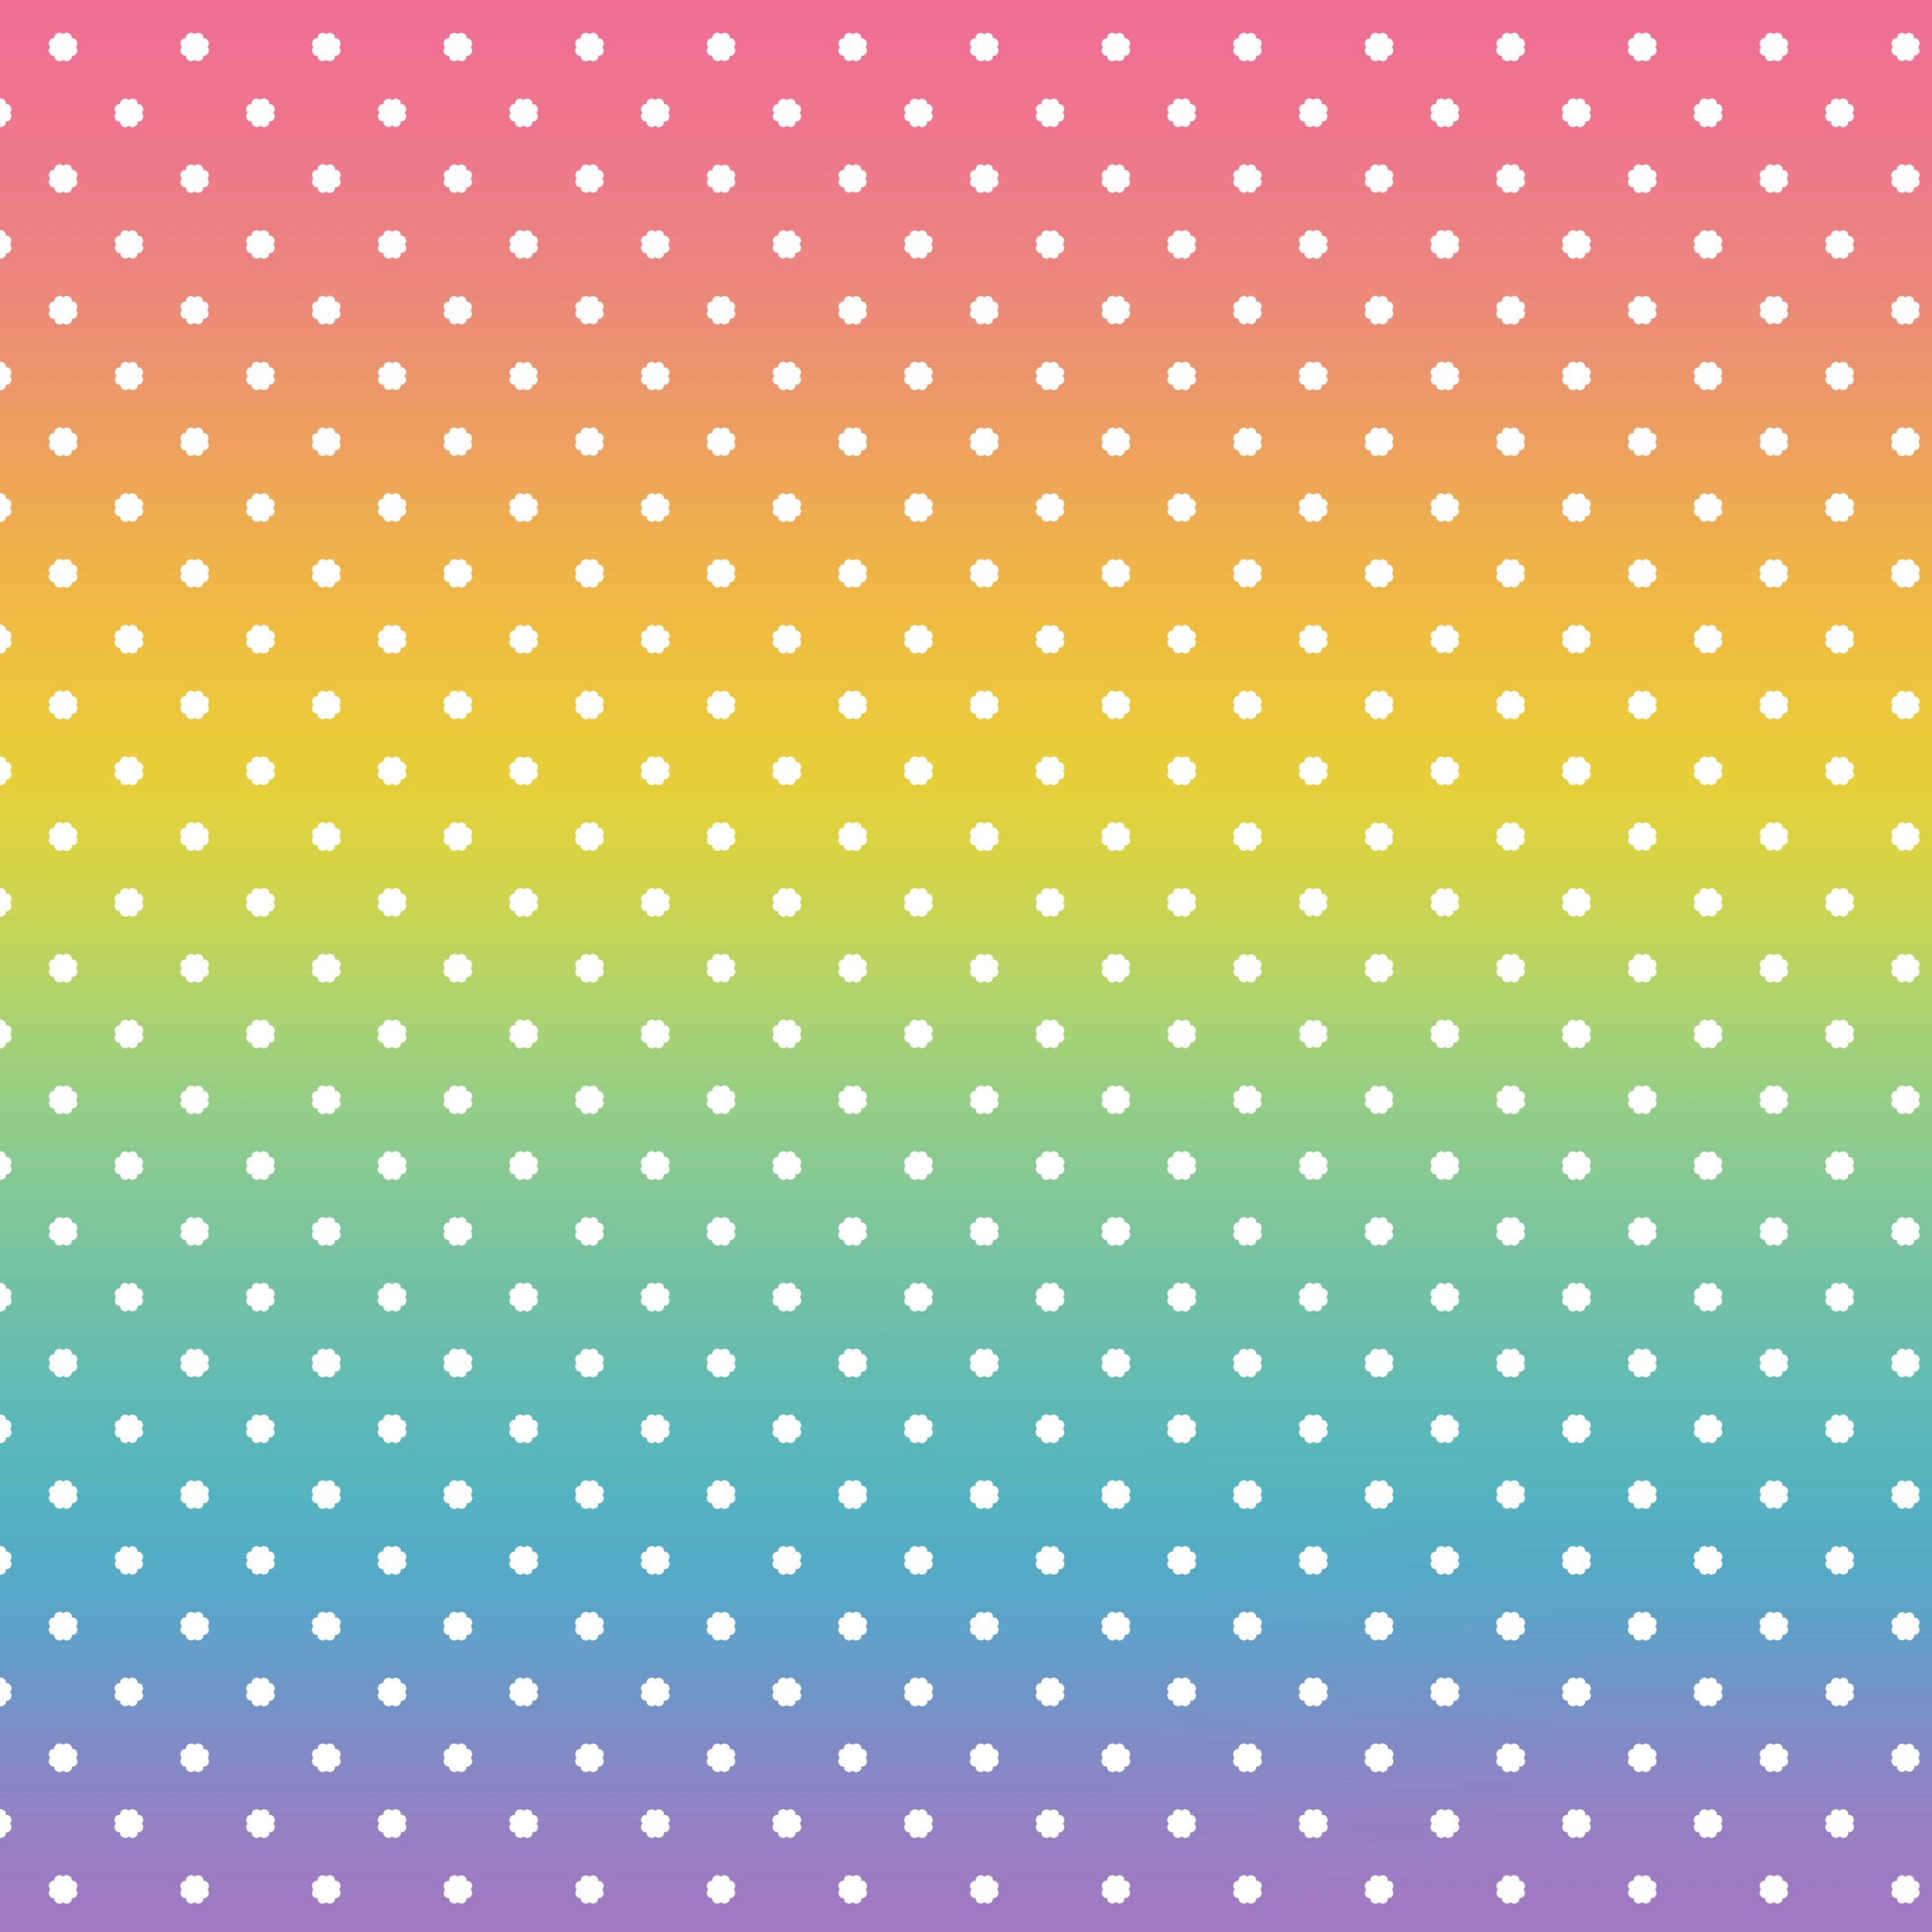 Papel digital de puntitos blancos sobre un fondo de colores arcoiris